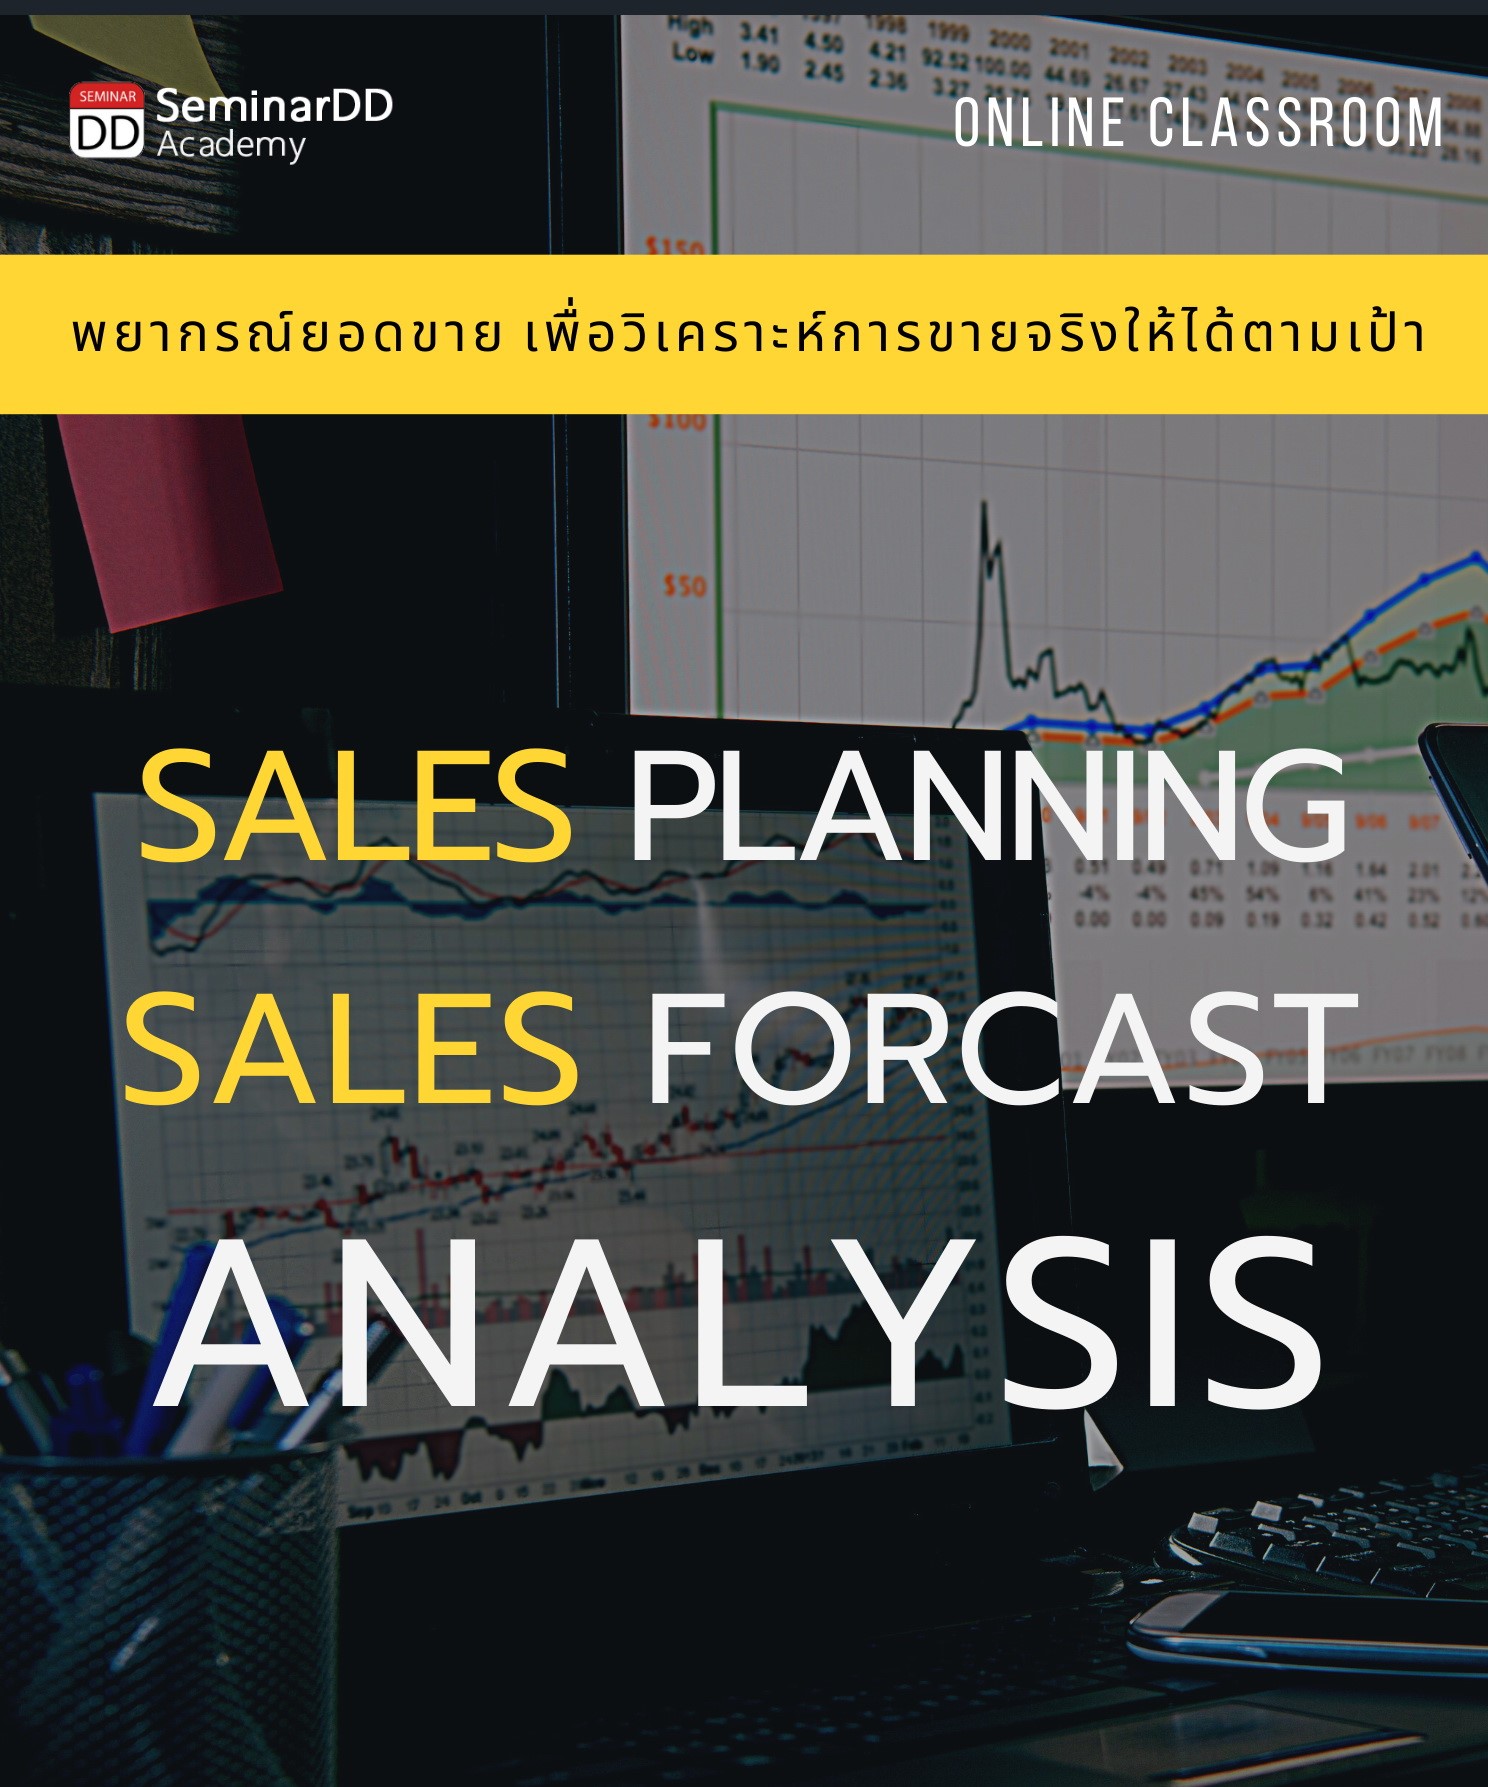 หลักสูตร : เทคนิคการพยากรณ์ยอดขายเพื่อวิเคราะห์การขายจริงให้ได้ตามเป้า ( Sales Planning & Sales Forecast Analysis ) อบรมในรูปแบบ Classroom